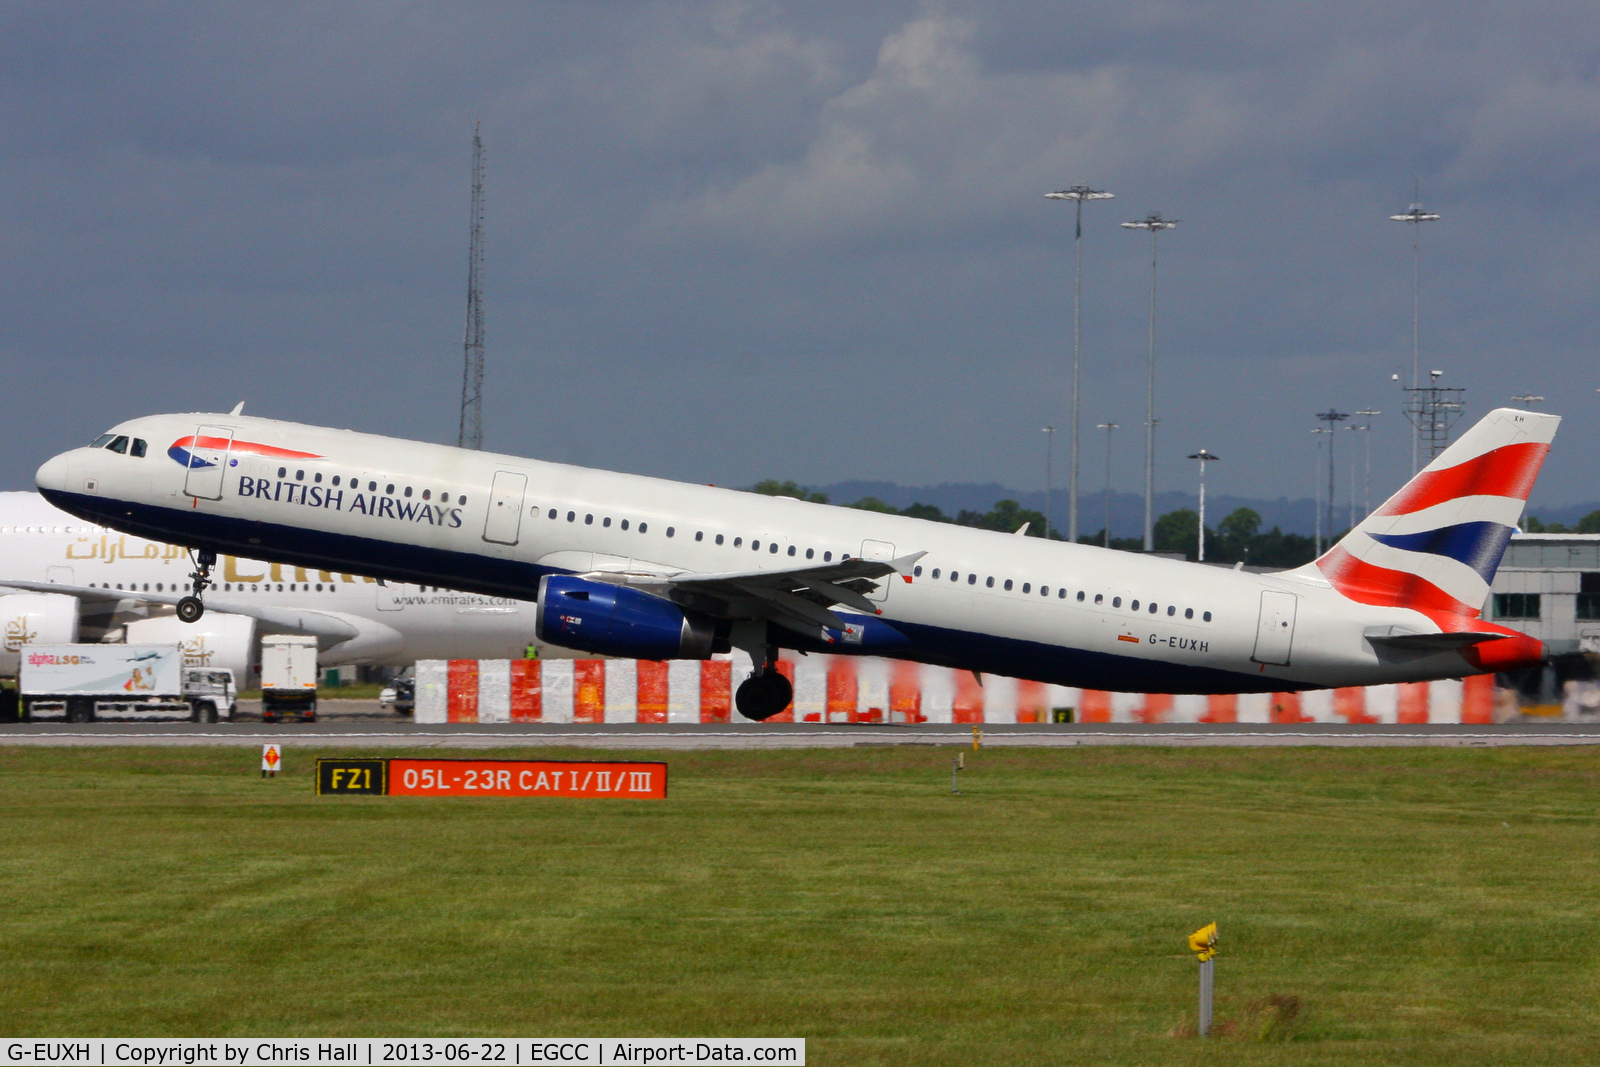 G-EUXH, 2004 Airbus A321-231 C/N 2363, British Airways